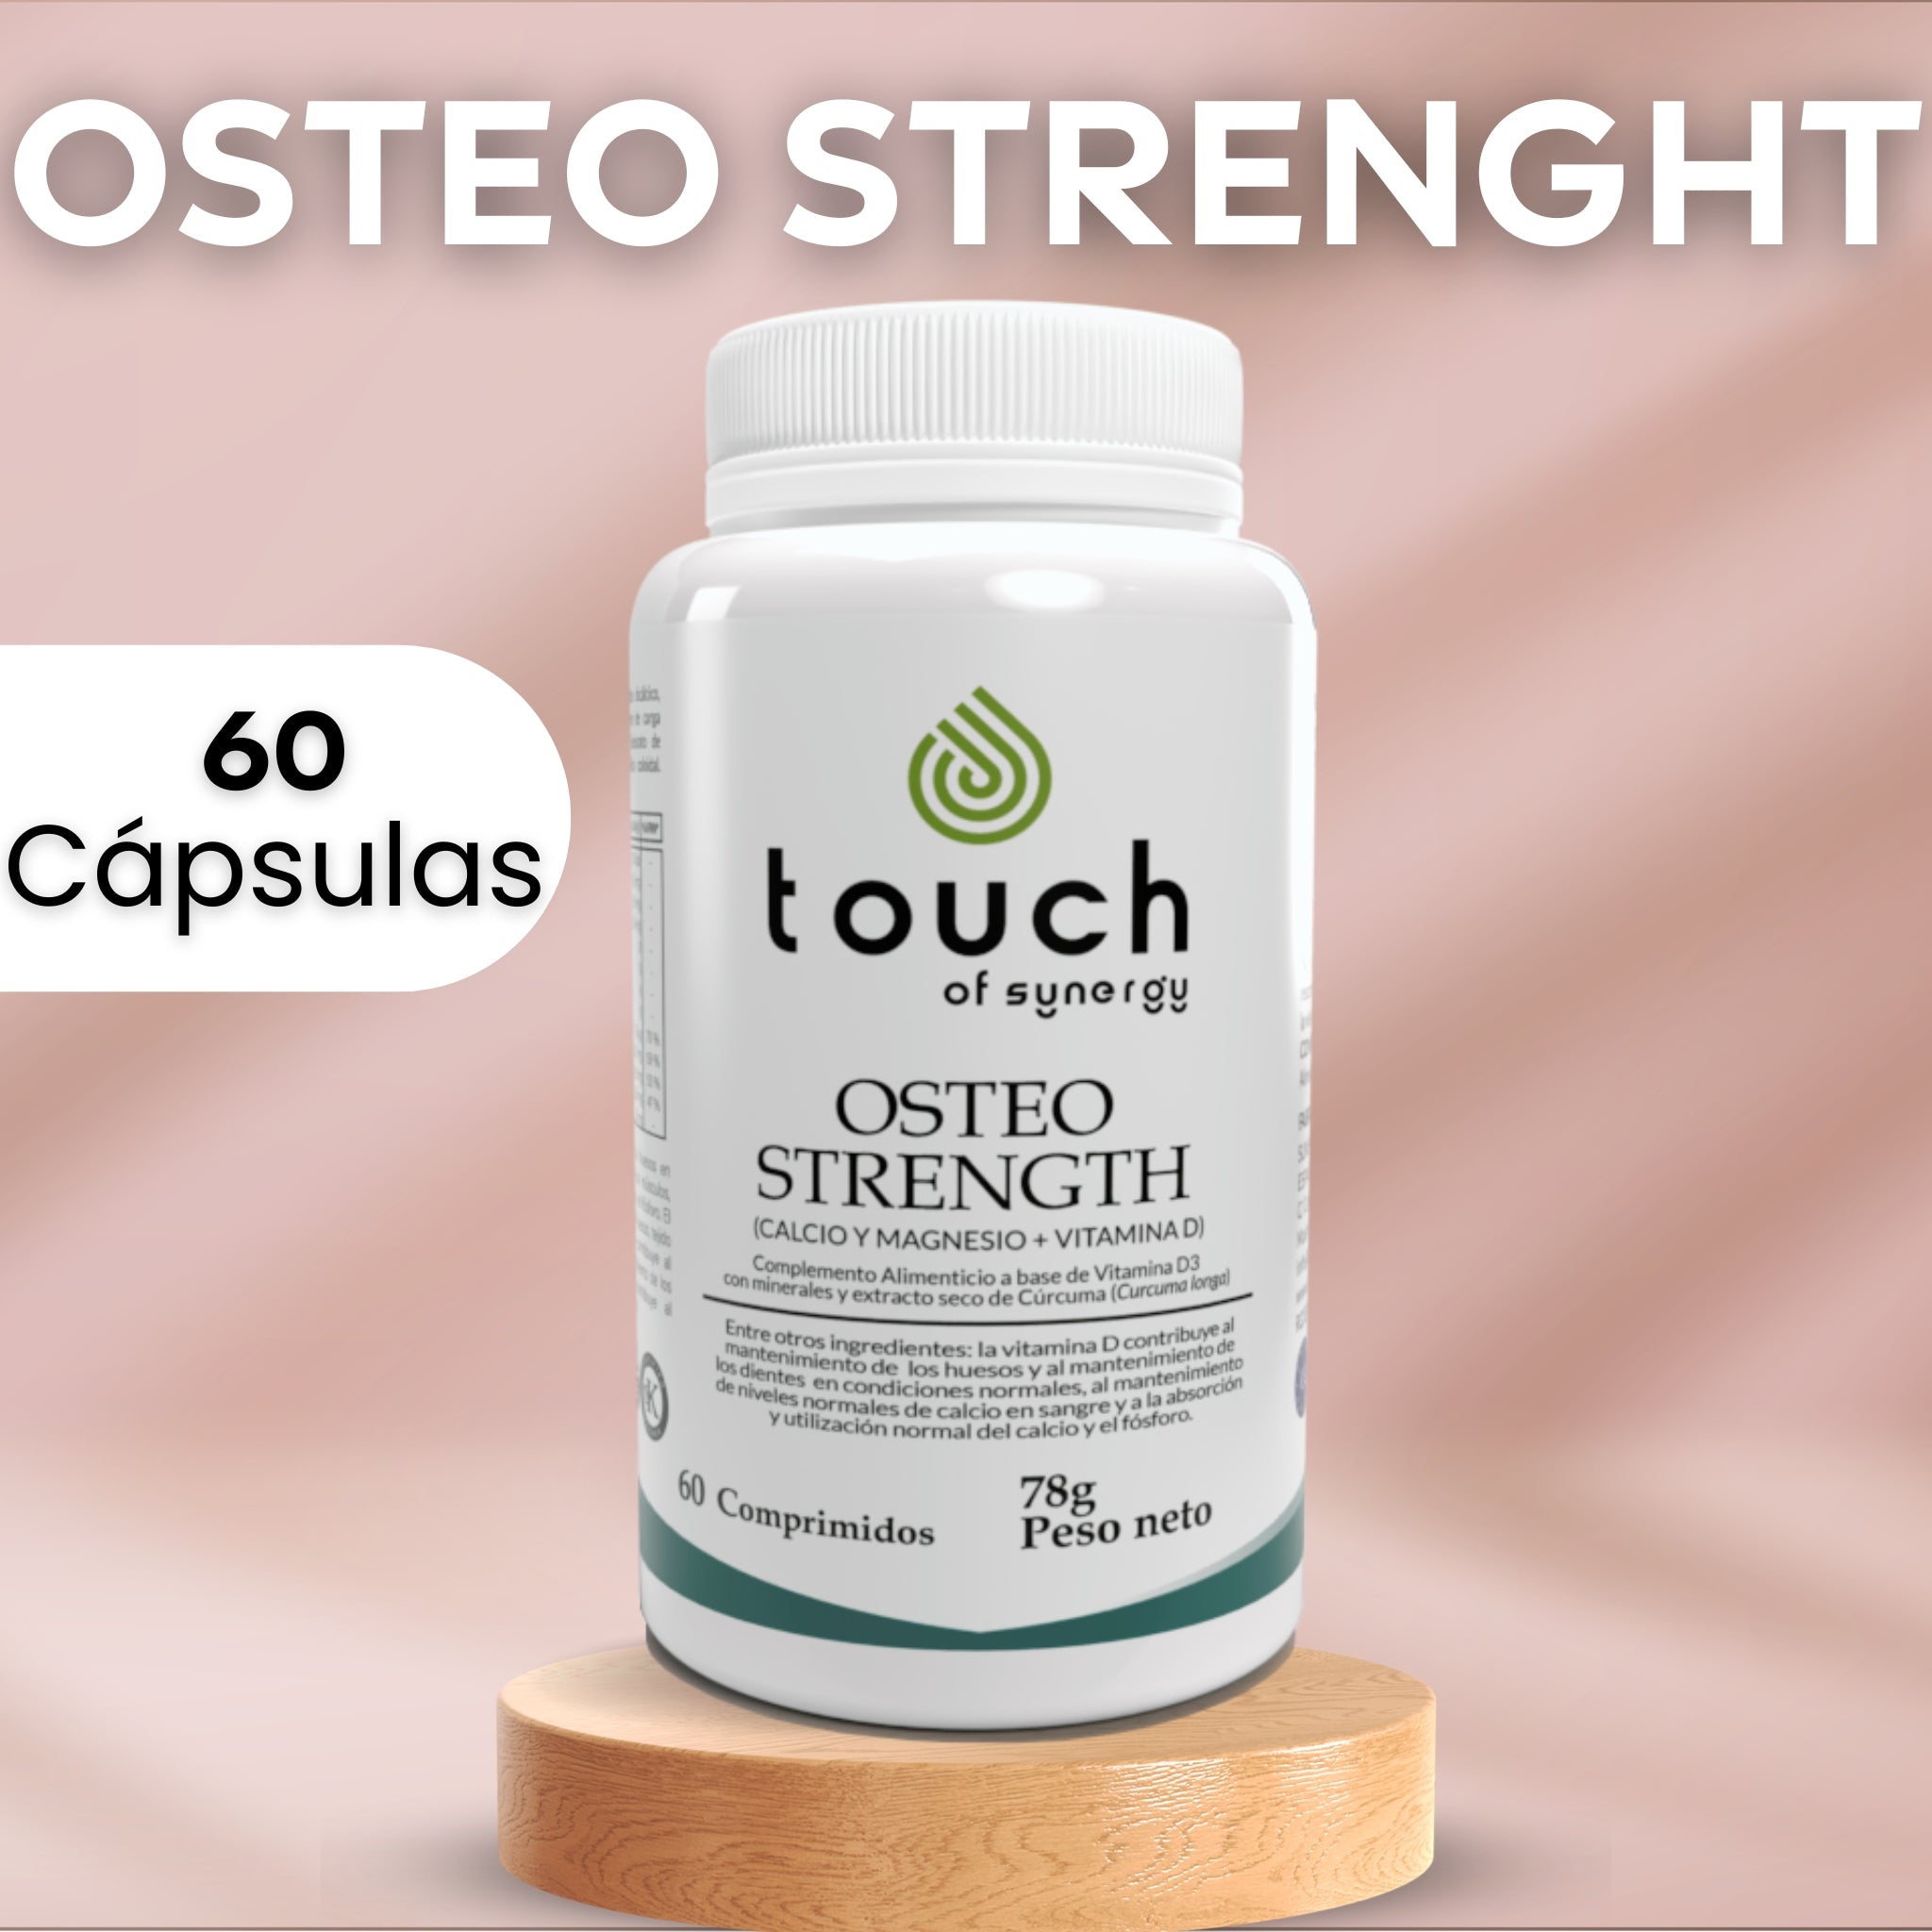 Osteo Strength (Calcio y Magnesio con Vitamina D) - 60 tabletas